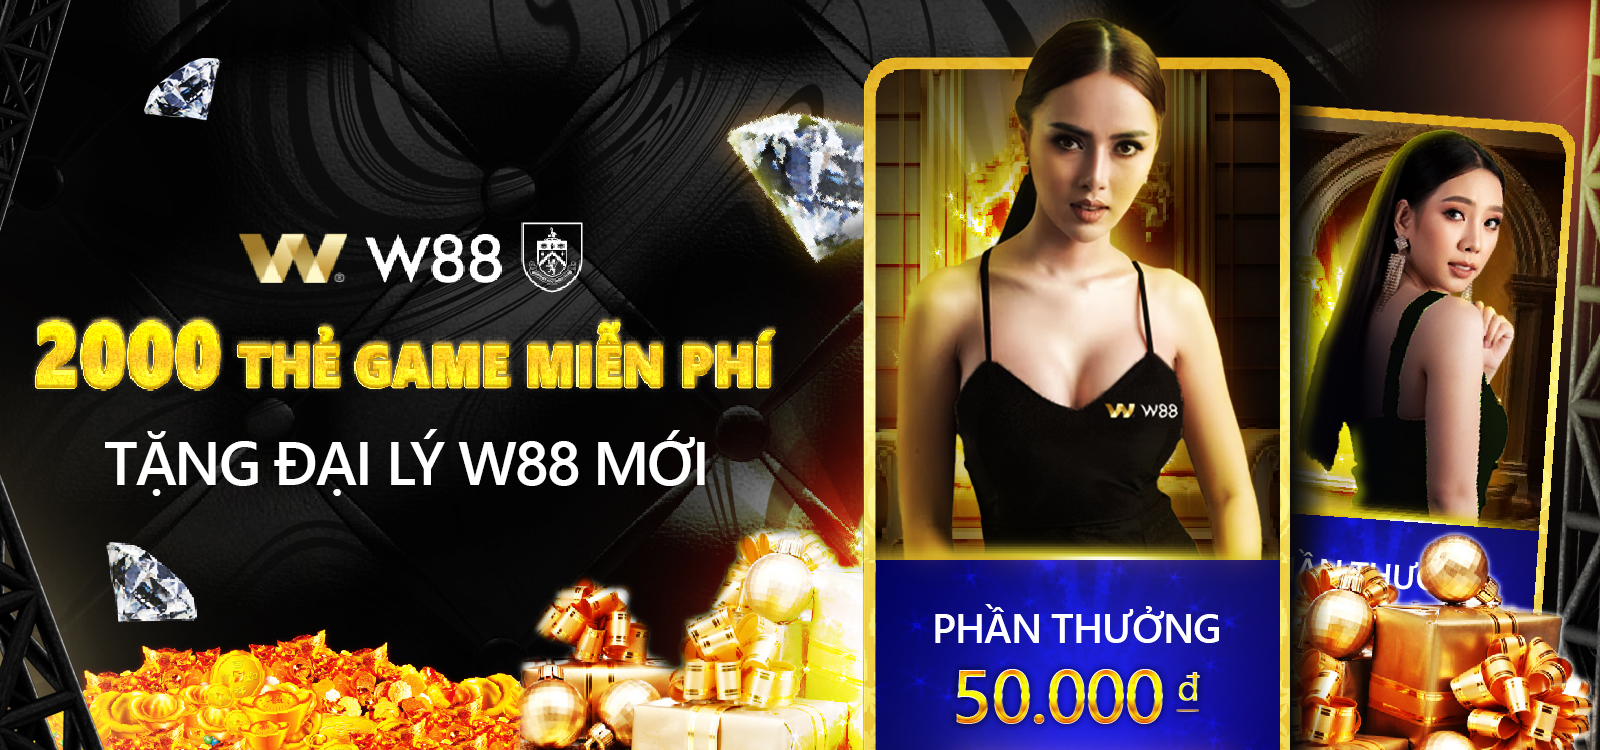 You are currently viewing W88 TẶNG 2000 THẺ GAME MIỄN PHÍ CHO ĐẠI LÝ MỚI THÁNG 11